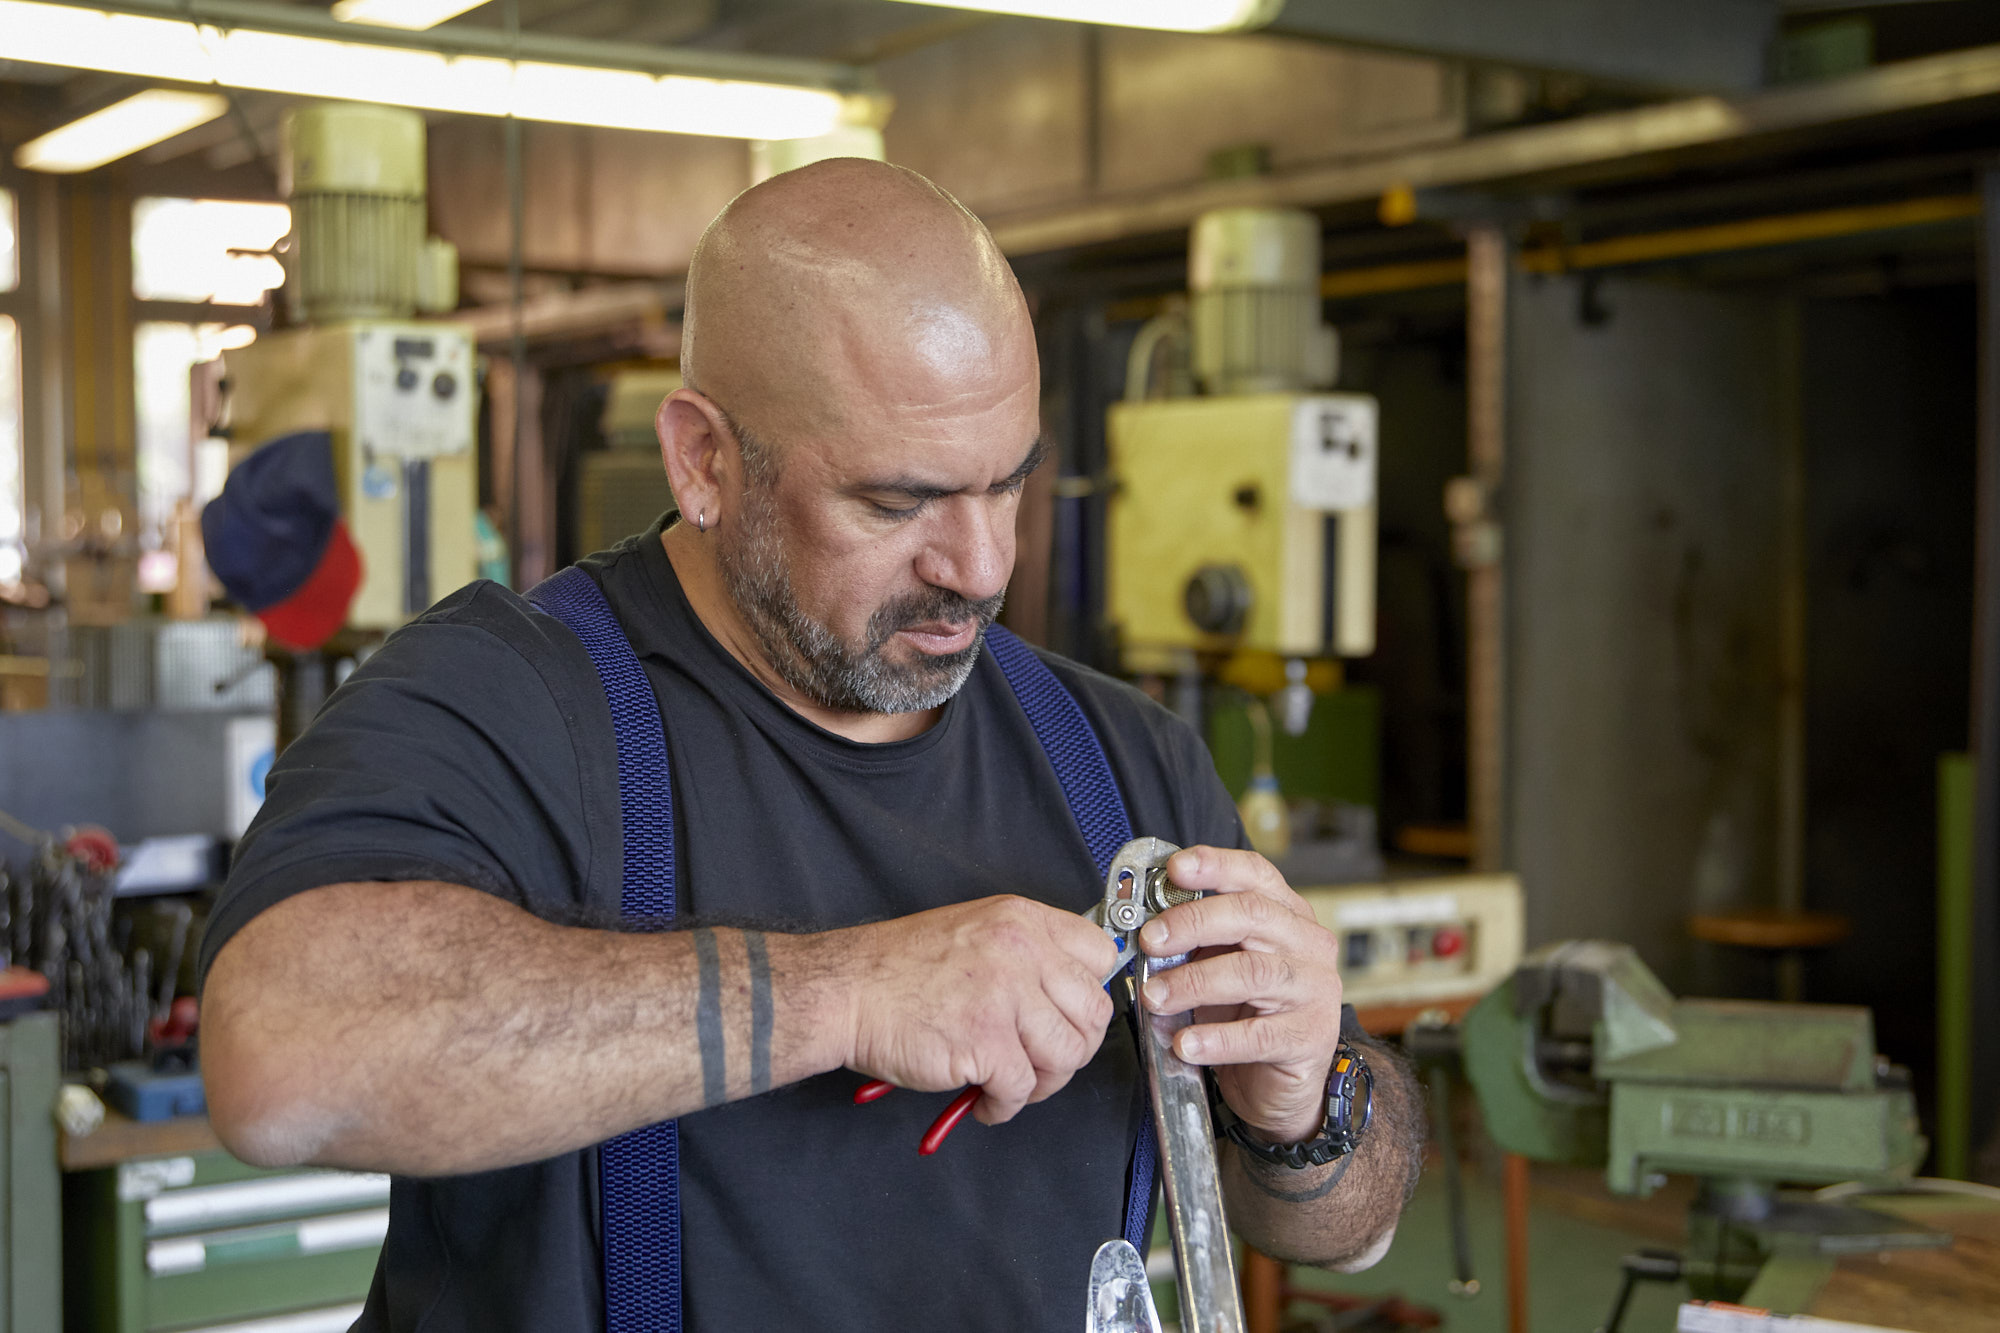 Mann im Blaumann steht in einer Werkstatt mit einer Zange in der Hand und montiert etwas.